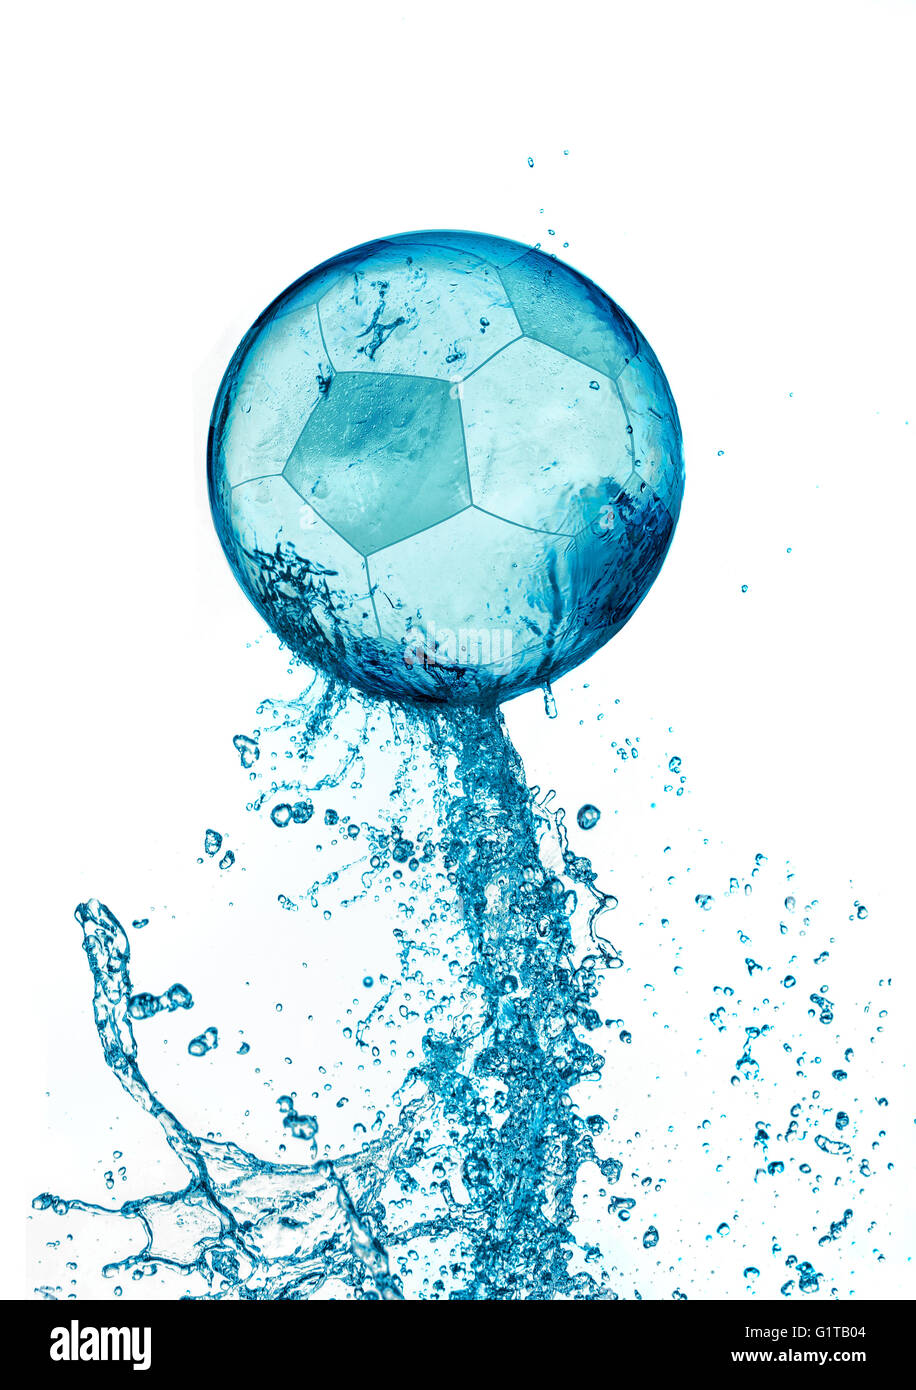 Abstract acqua palla calcio splash isolati su sfondo bianco. Il calcio concetto astratto. Foto Stock